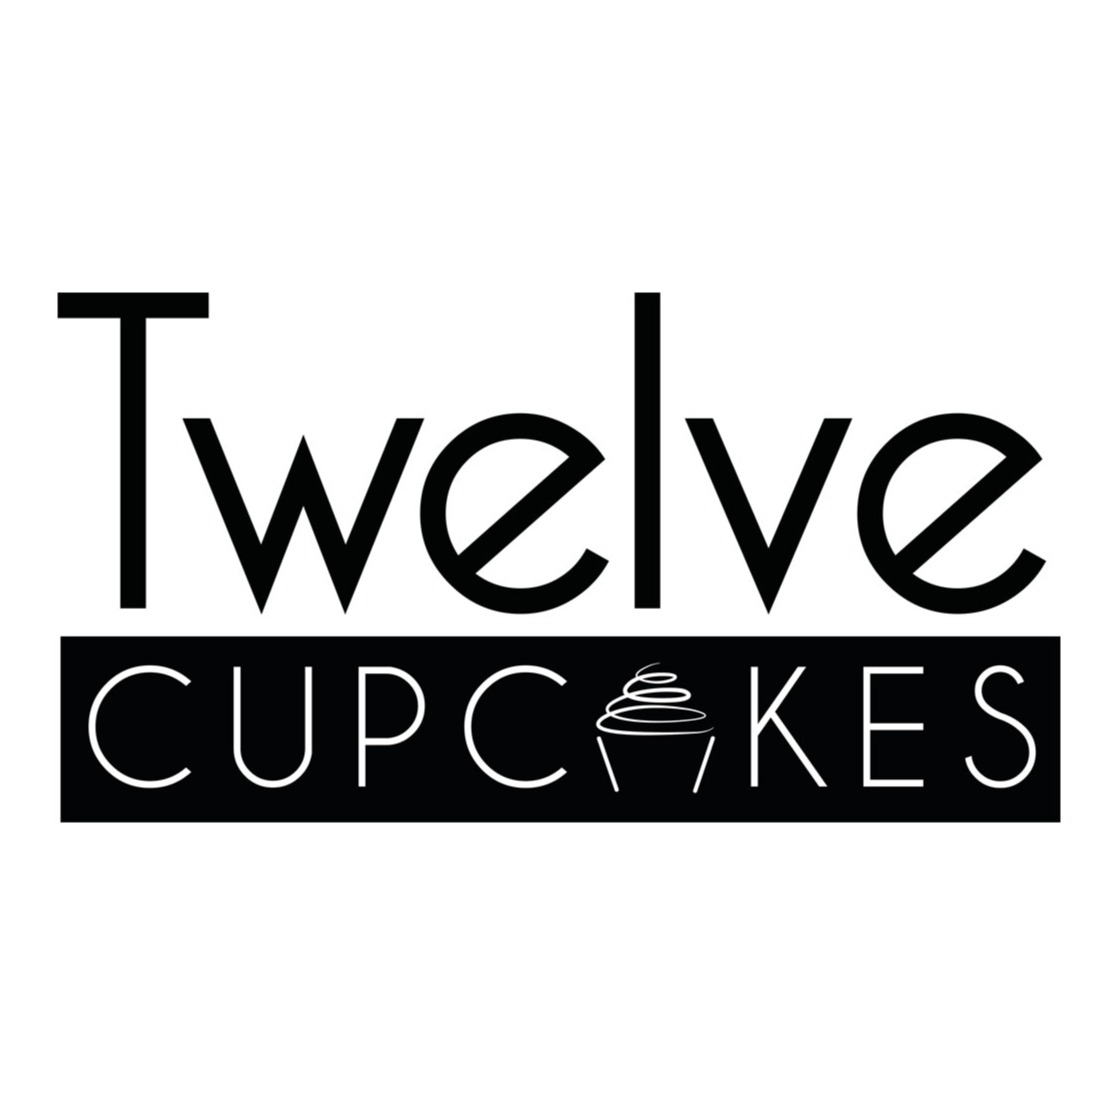 Twelve Cupcakes logo at Jem, Jurong